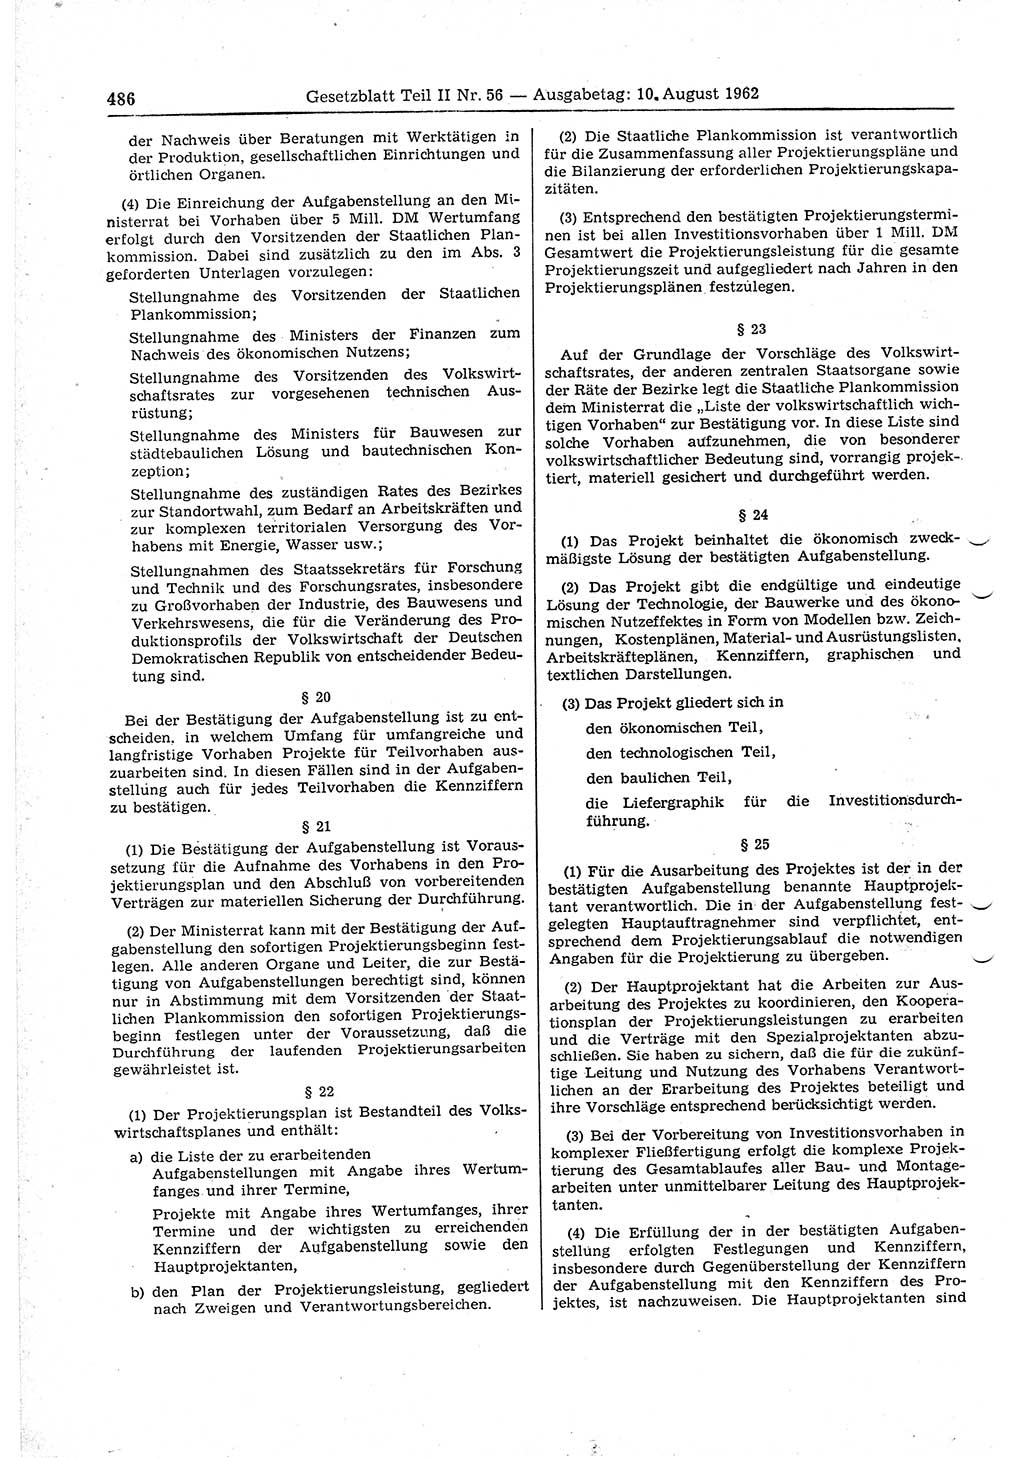 Gesetzblatt (GBl.) der Deutschen Demokratischen Republik (DDR) Teil ⅠⅠ 1962, Seite 486 (GBl. DDR ⅠⅠ 1962, S. 486)